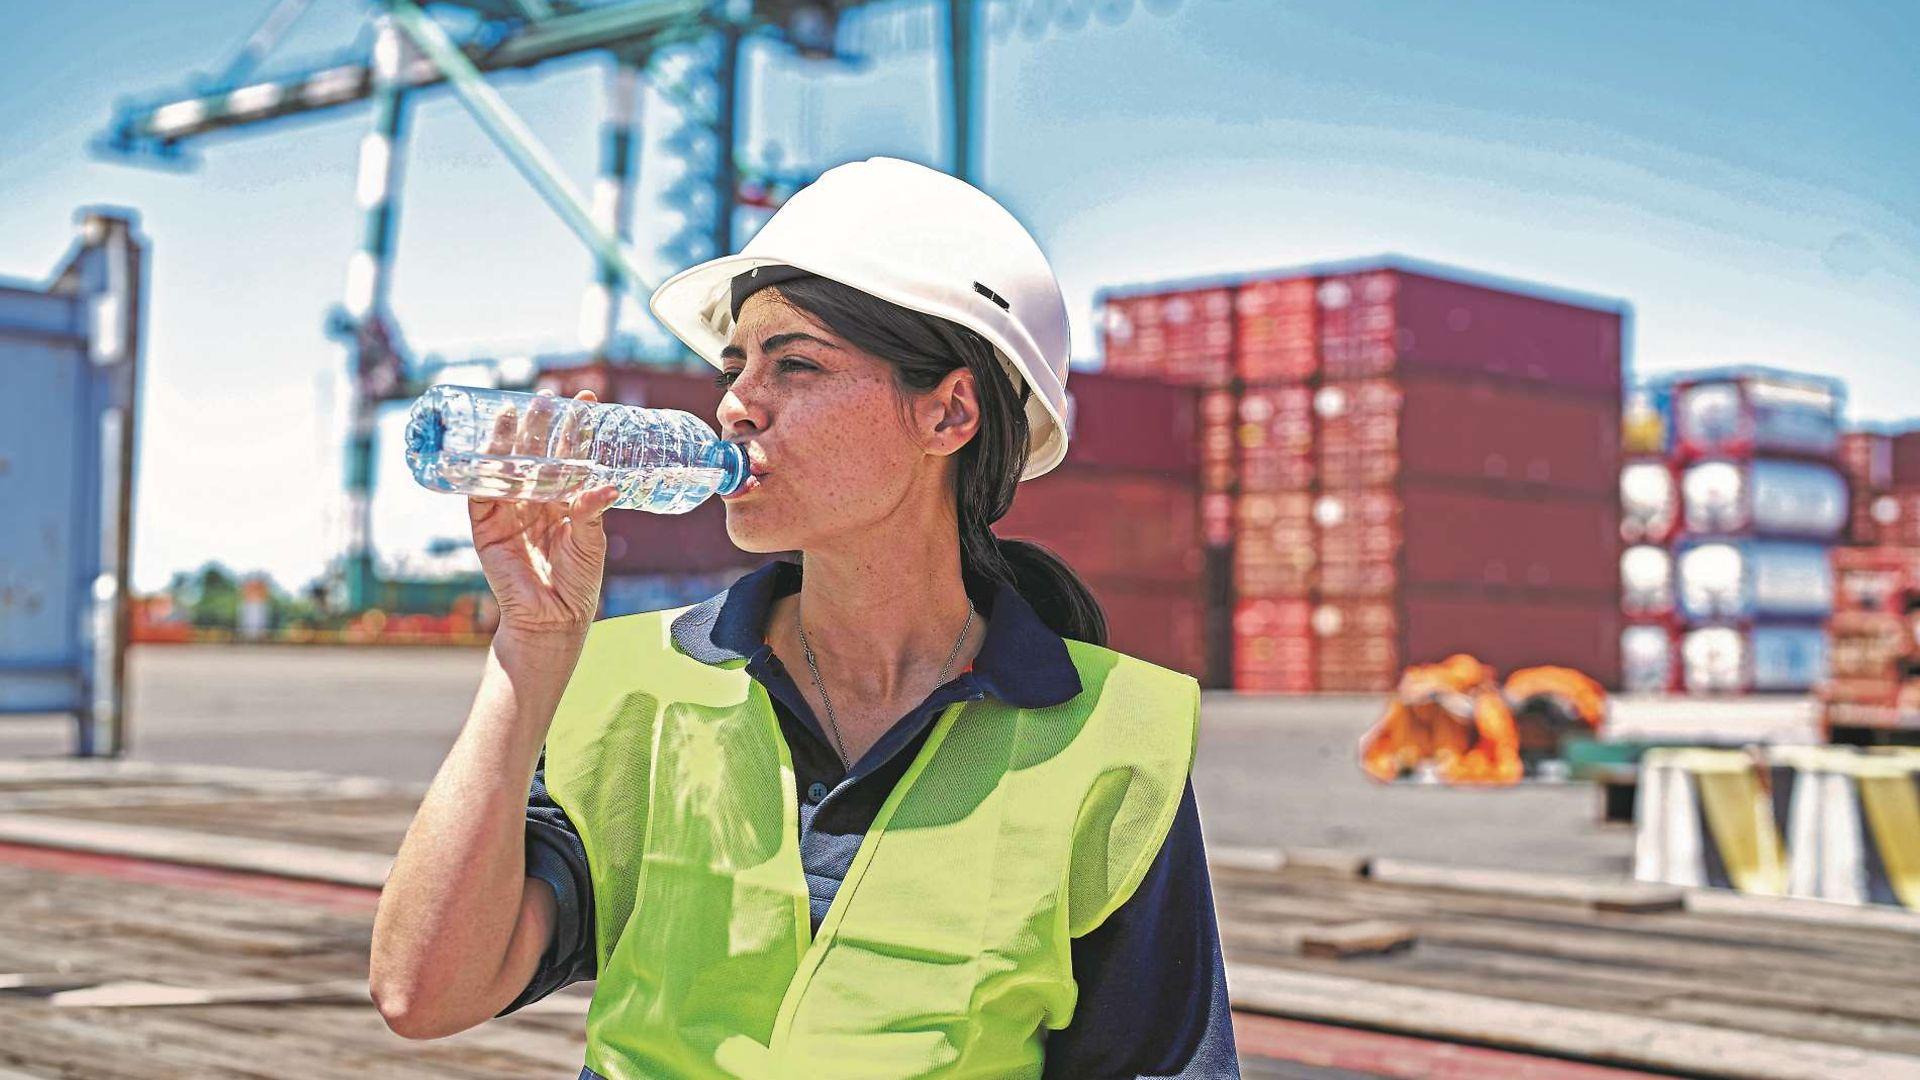 Symbolbild Hitze: Arbeiterin im Hafen trinkt eine Flasche Wasser